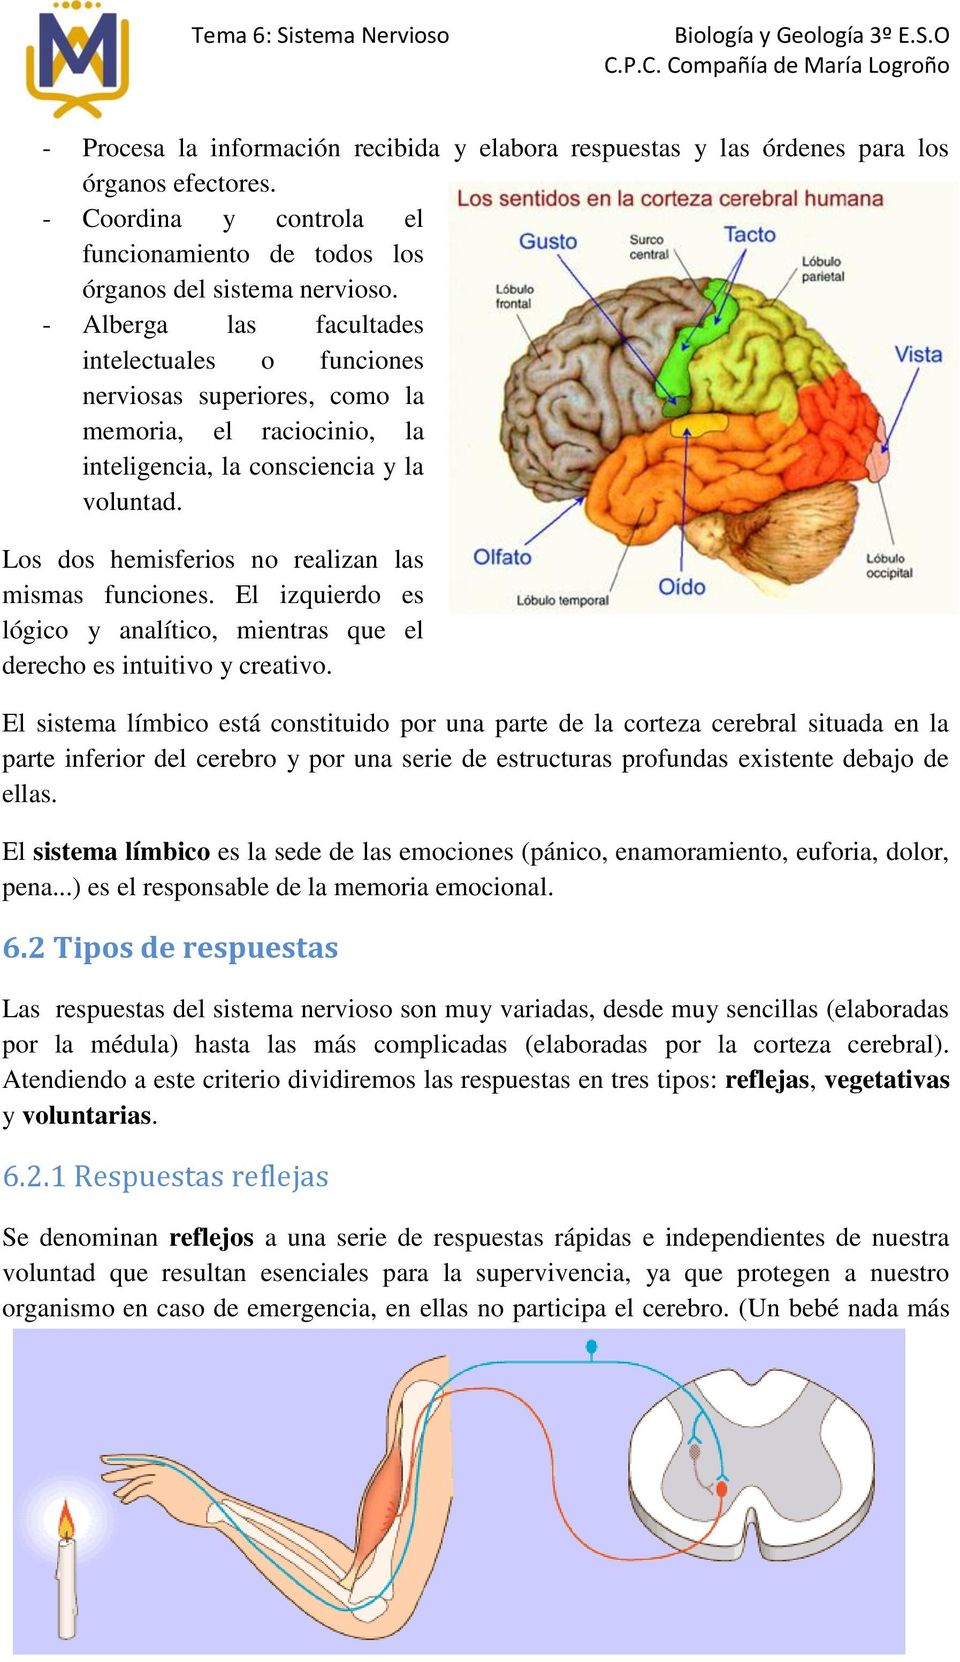 Los dos hemisferios no realizan las mismas funciones. El izquierdo es lógico y analítico, mientras que el derecho es intuitivo y creativo.